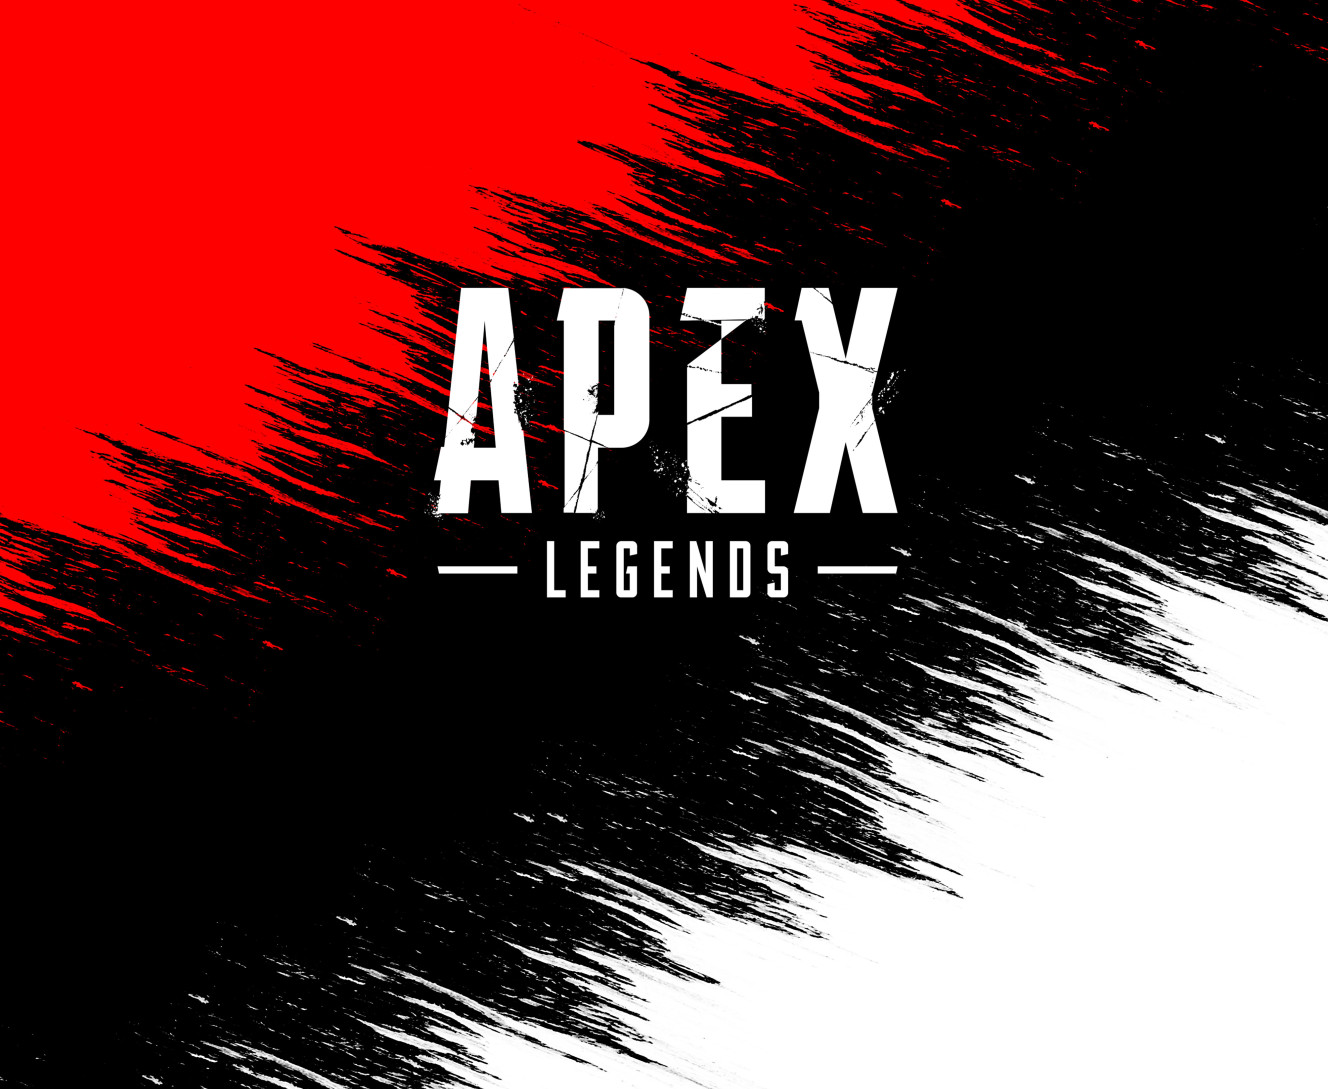 Apex Legends [7]